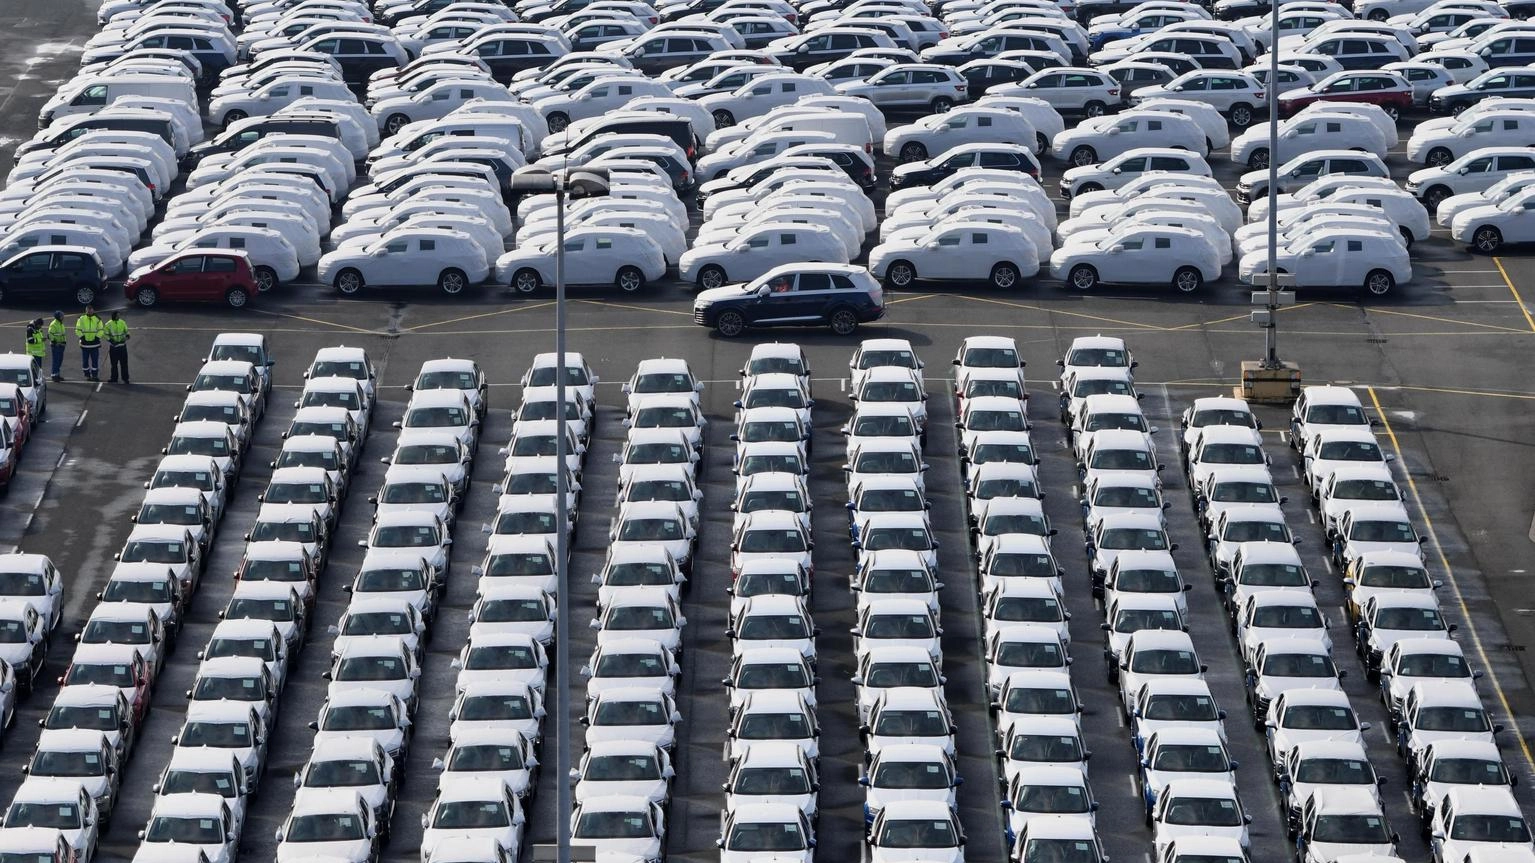 Mercato dell'auto in Europa cresce del 10,2% a febbraio